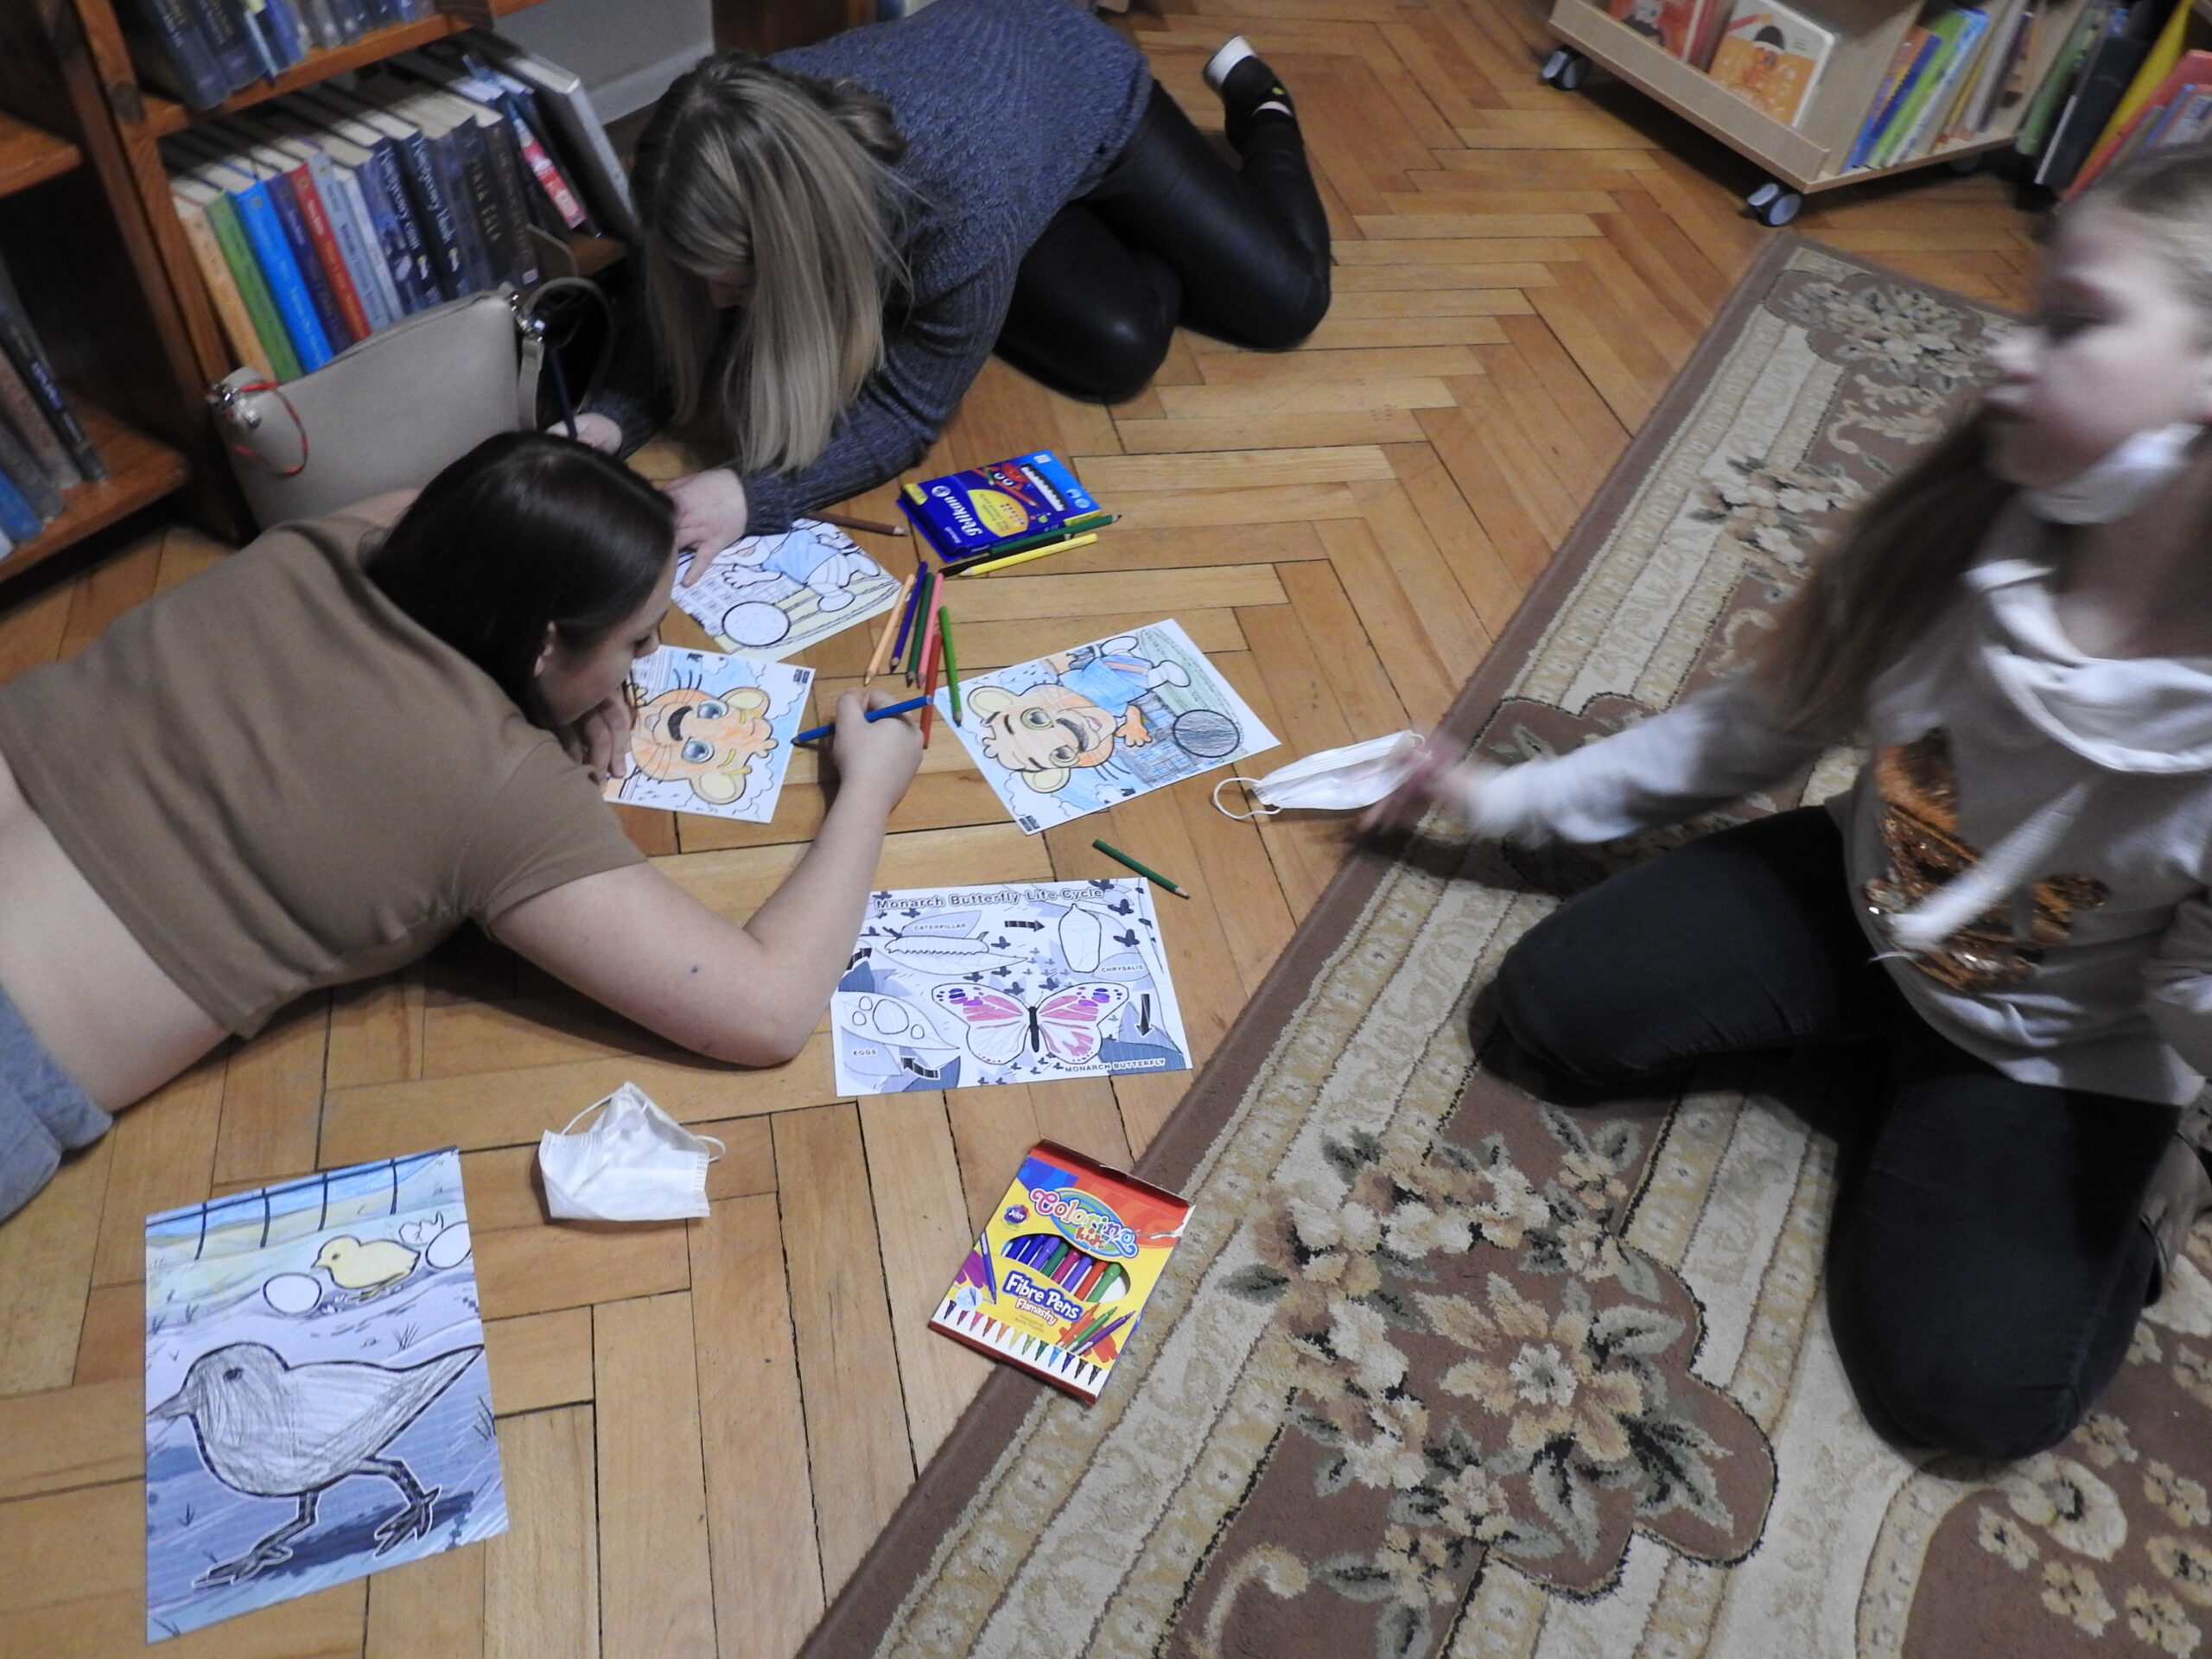 Cztery osoby w pomieszczeniu z ksiązkami. Dwie leżą na podłodze, dwie siedzą, przed nimi rysunki i kredki.